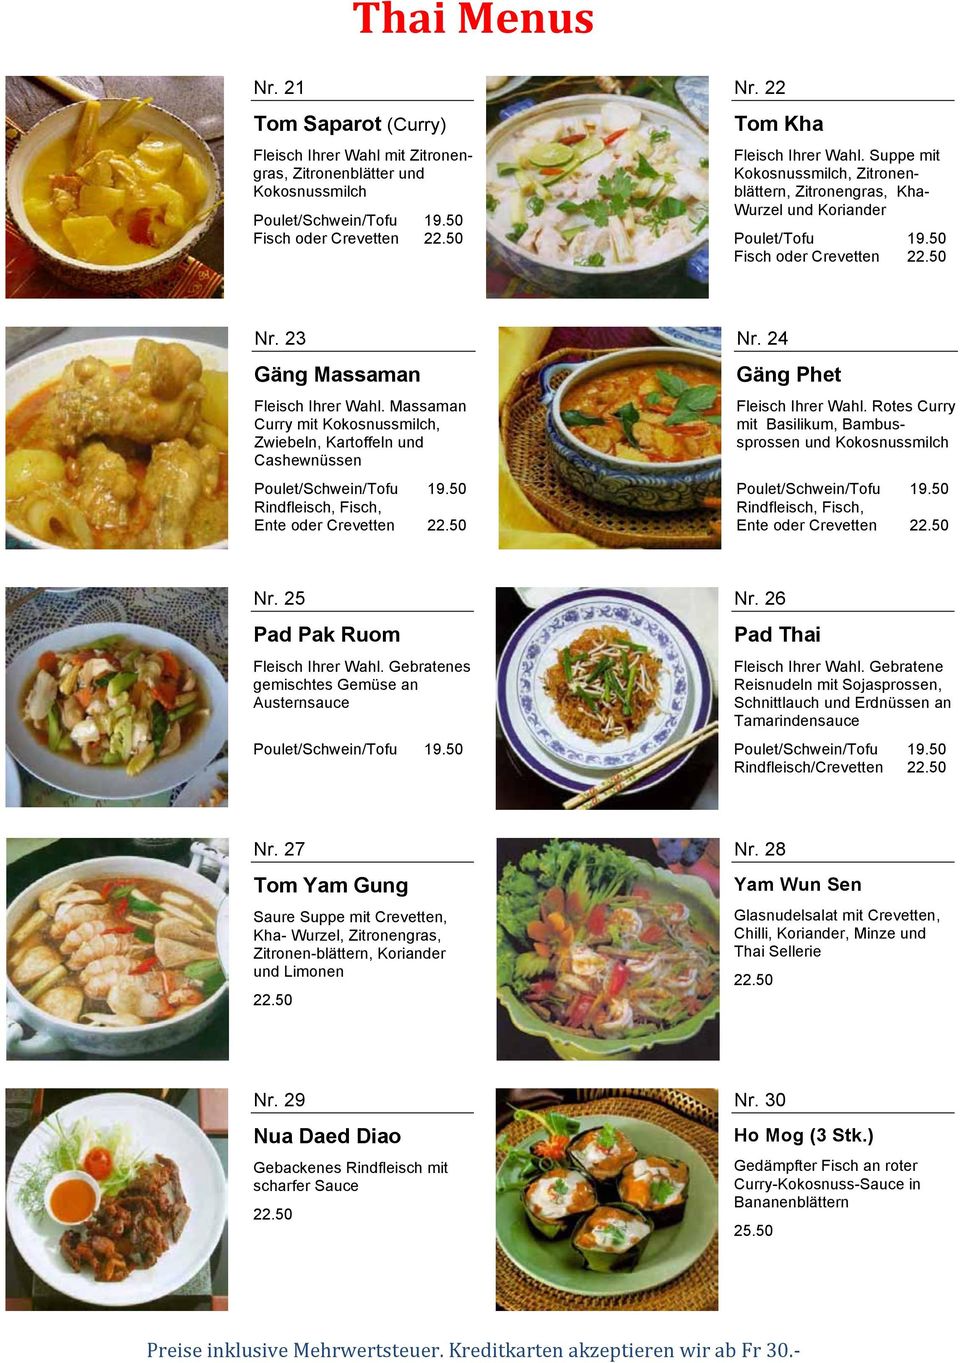 Massaman Curry mit Kokosnussmilch, Zwiebeln, Kartoffeln und Cashewnüssen Ente oder Crevetten Nr. 24 Gäng Phet Fleisch Ihrer Wahl.